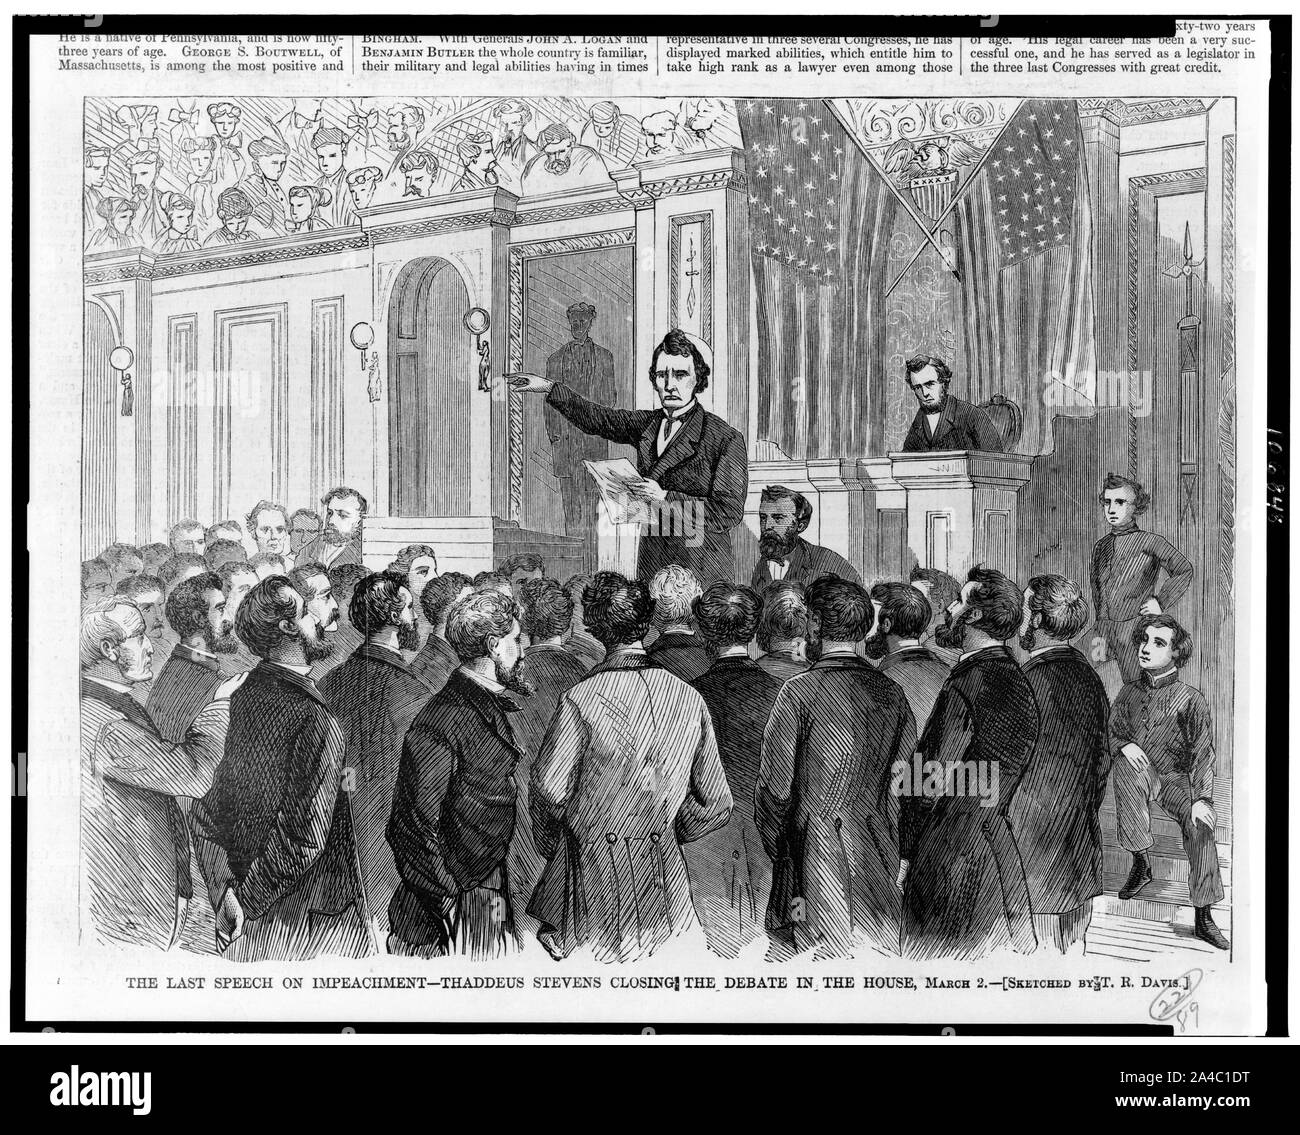 L'ultimo discorso di impeachment--Thaddeus Stevens chiudendo il dibattito in Aula, 2 marzo / abbozzato da T.R. Davis. Foto Stock